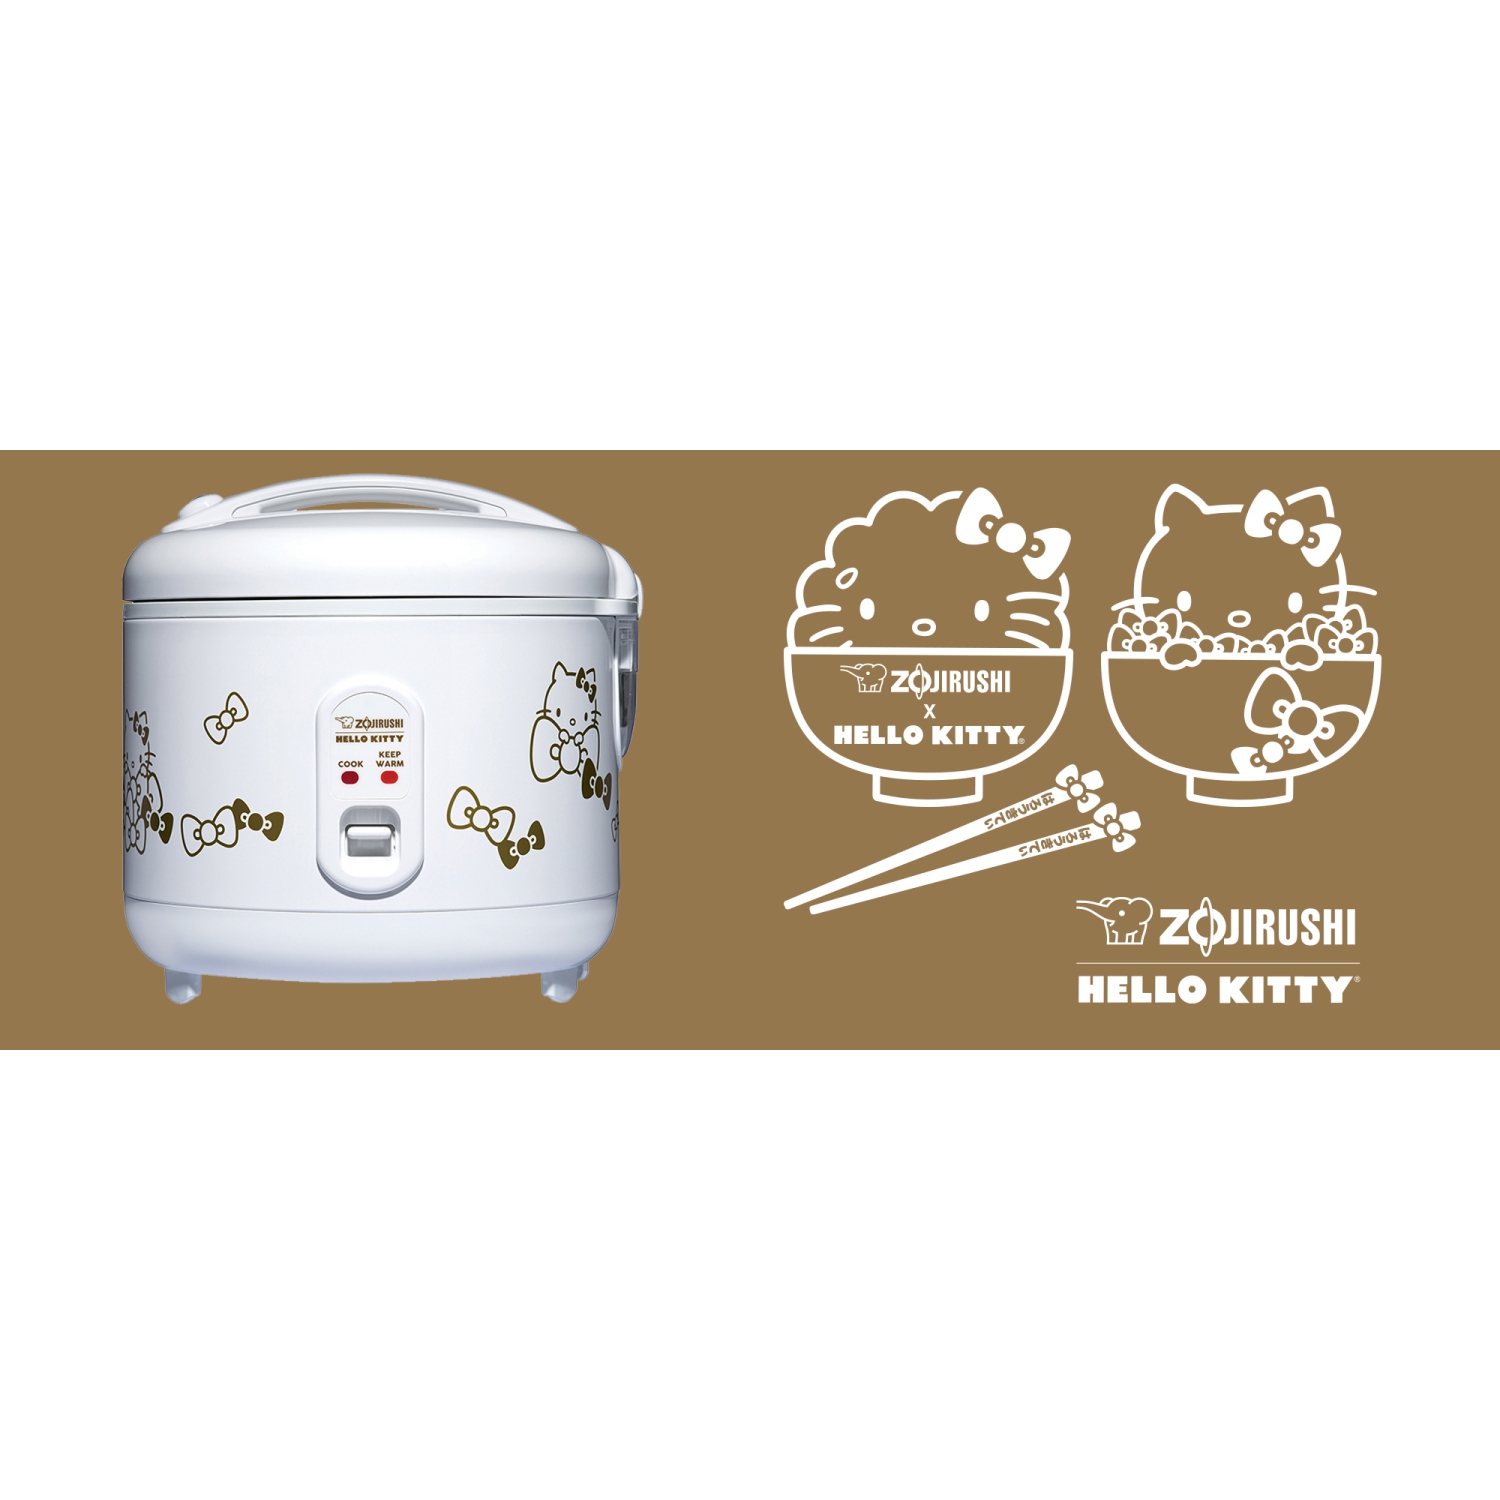 Sanrio x 10x10 - Hello Kitty Rice Cooker